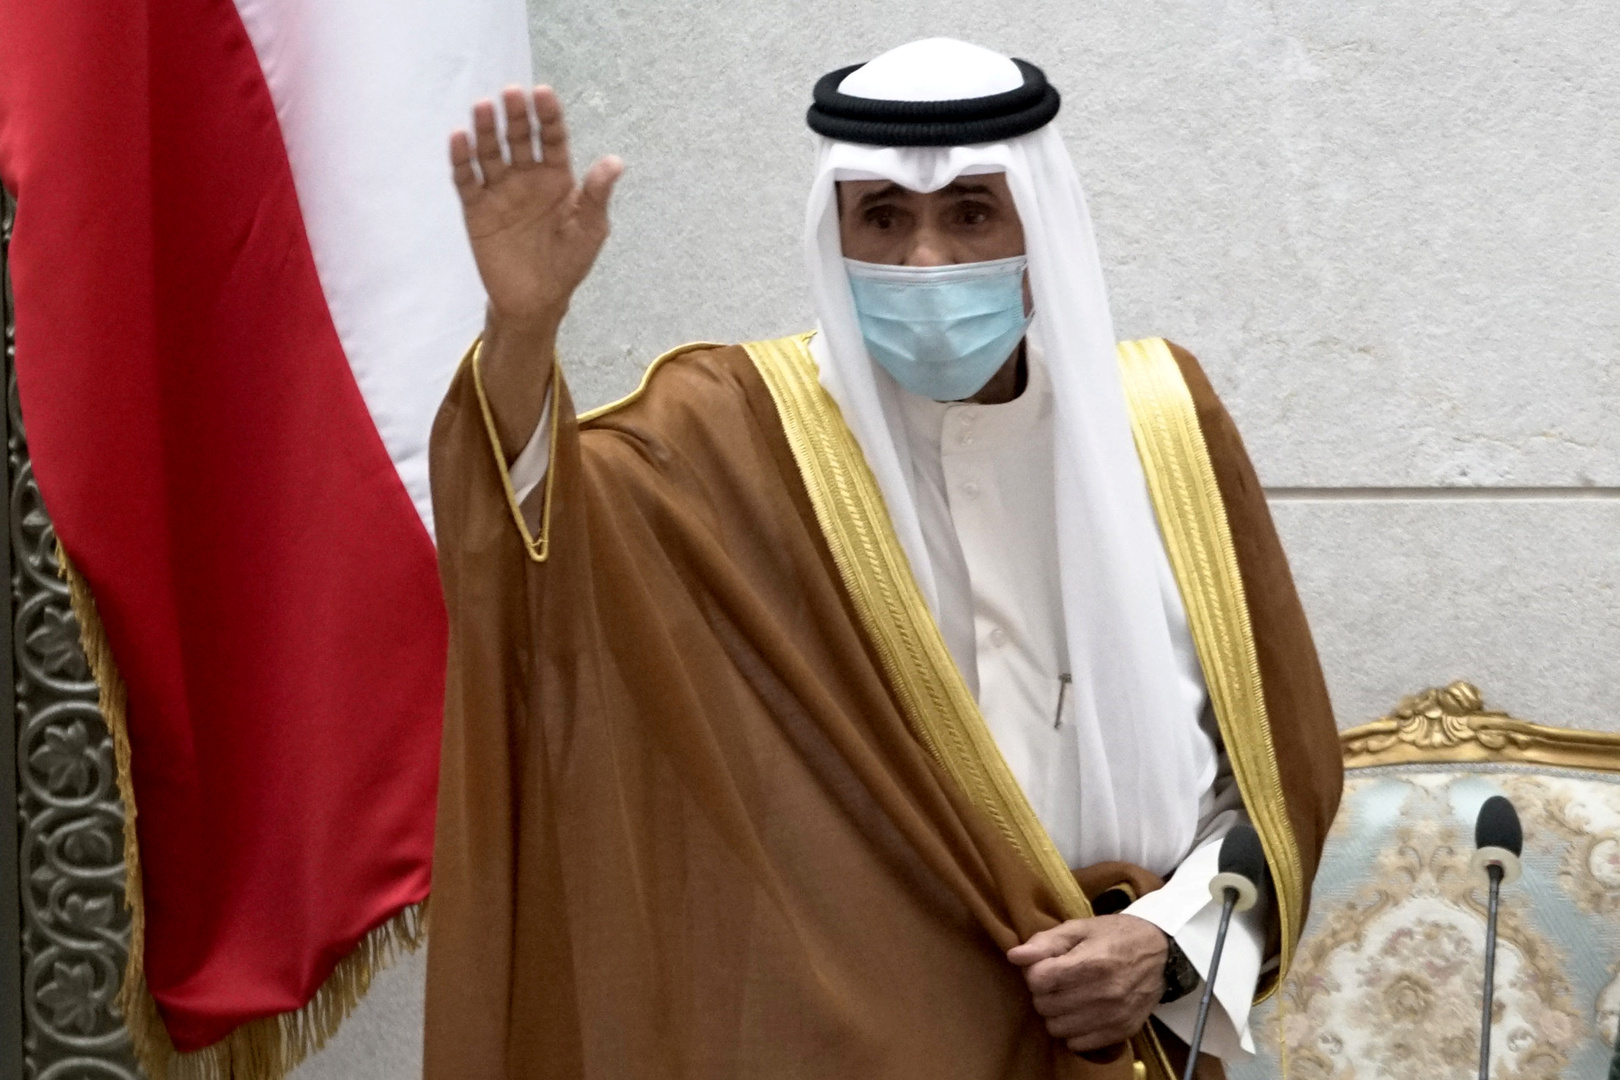 أمير الكويت يطالب النواب بالتعاون مع حكومة الخالد